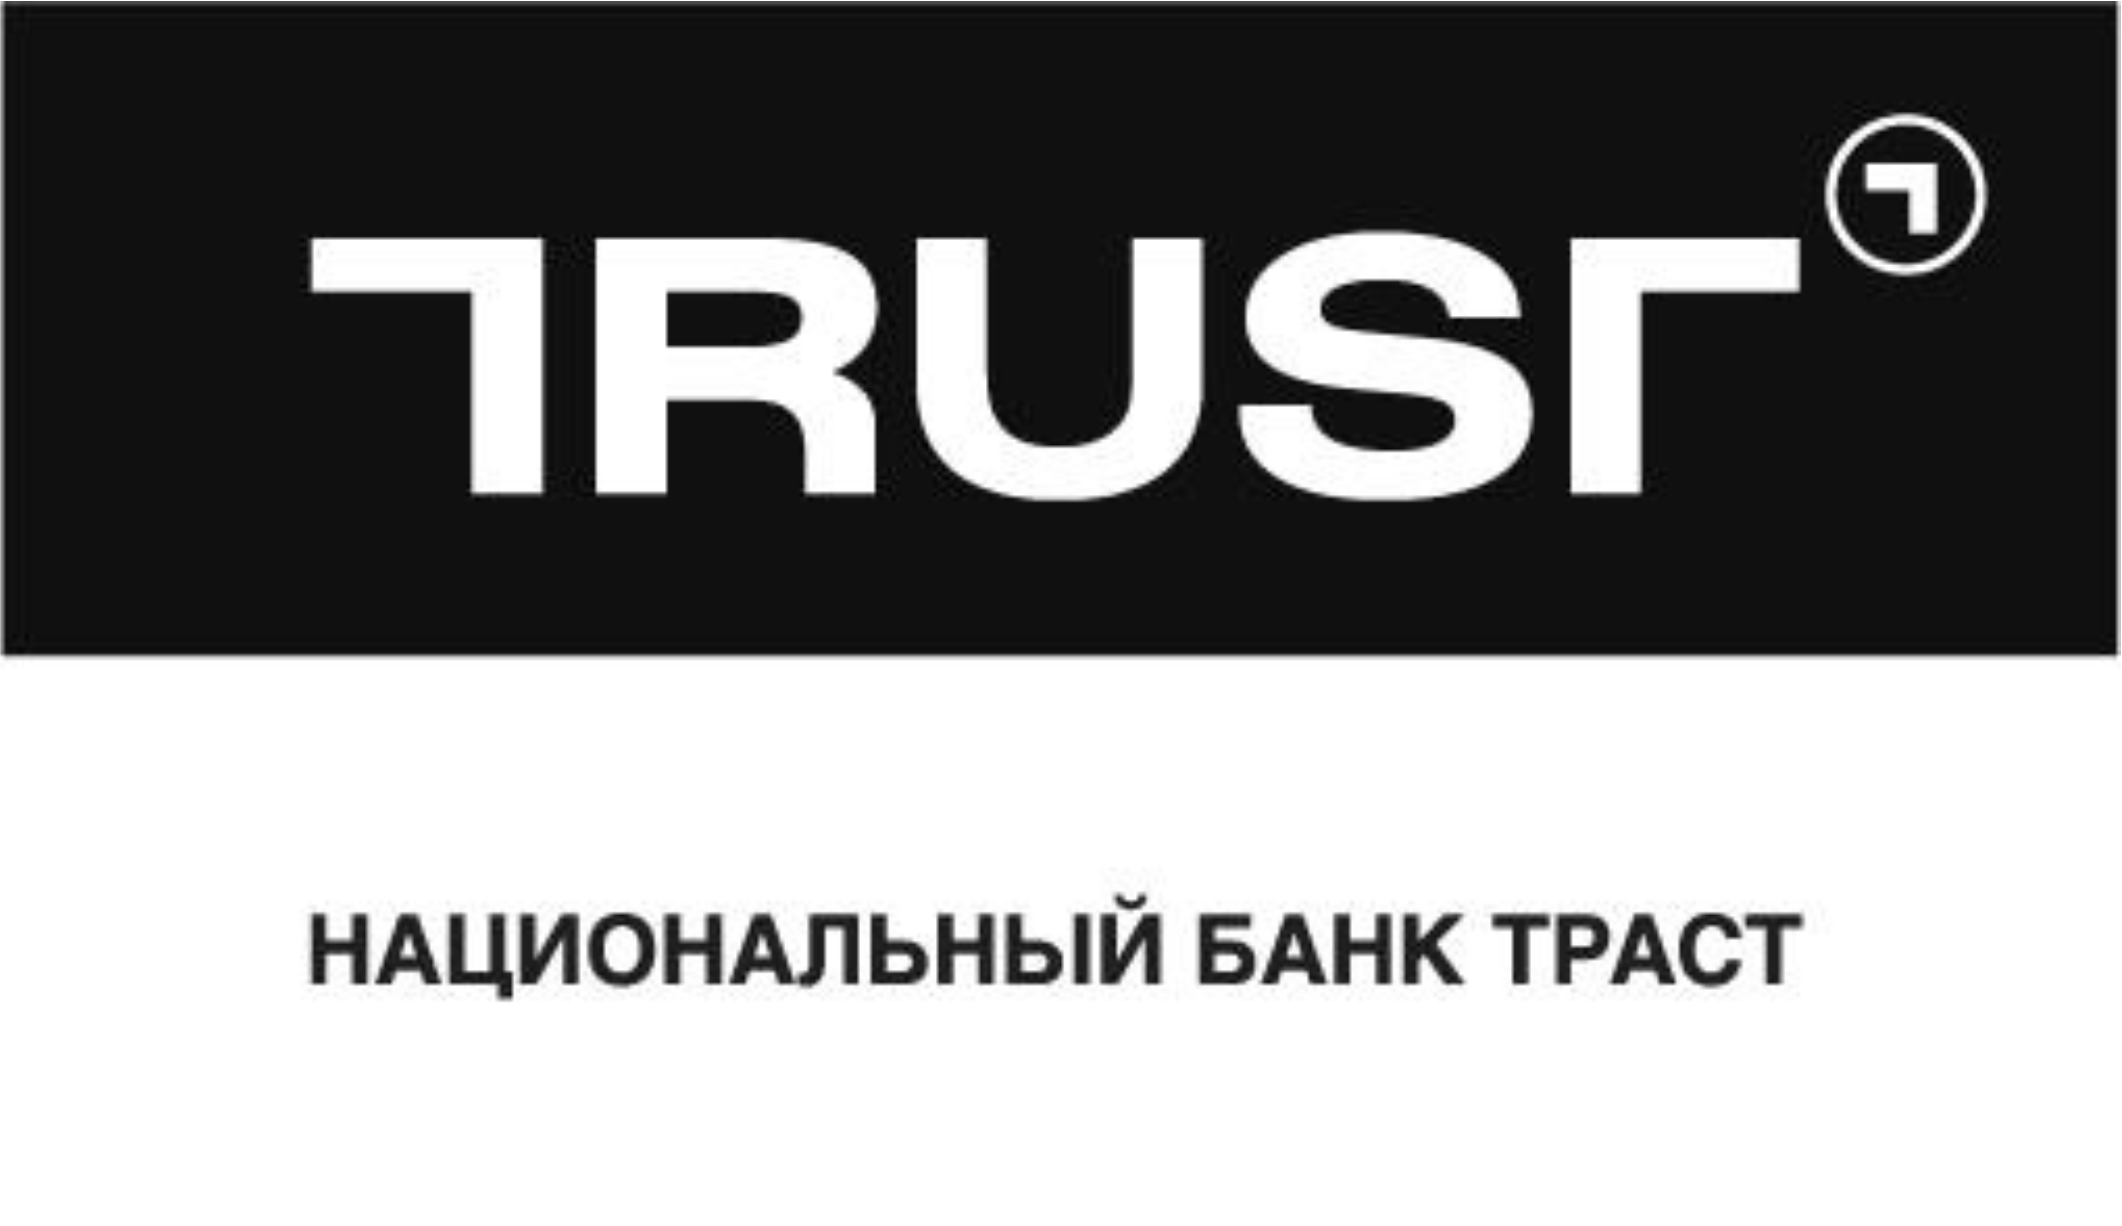 Пользователи соцсетей в рунете выбирают «ТРАСТ» - БАНК «ТРАСТ»